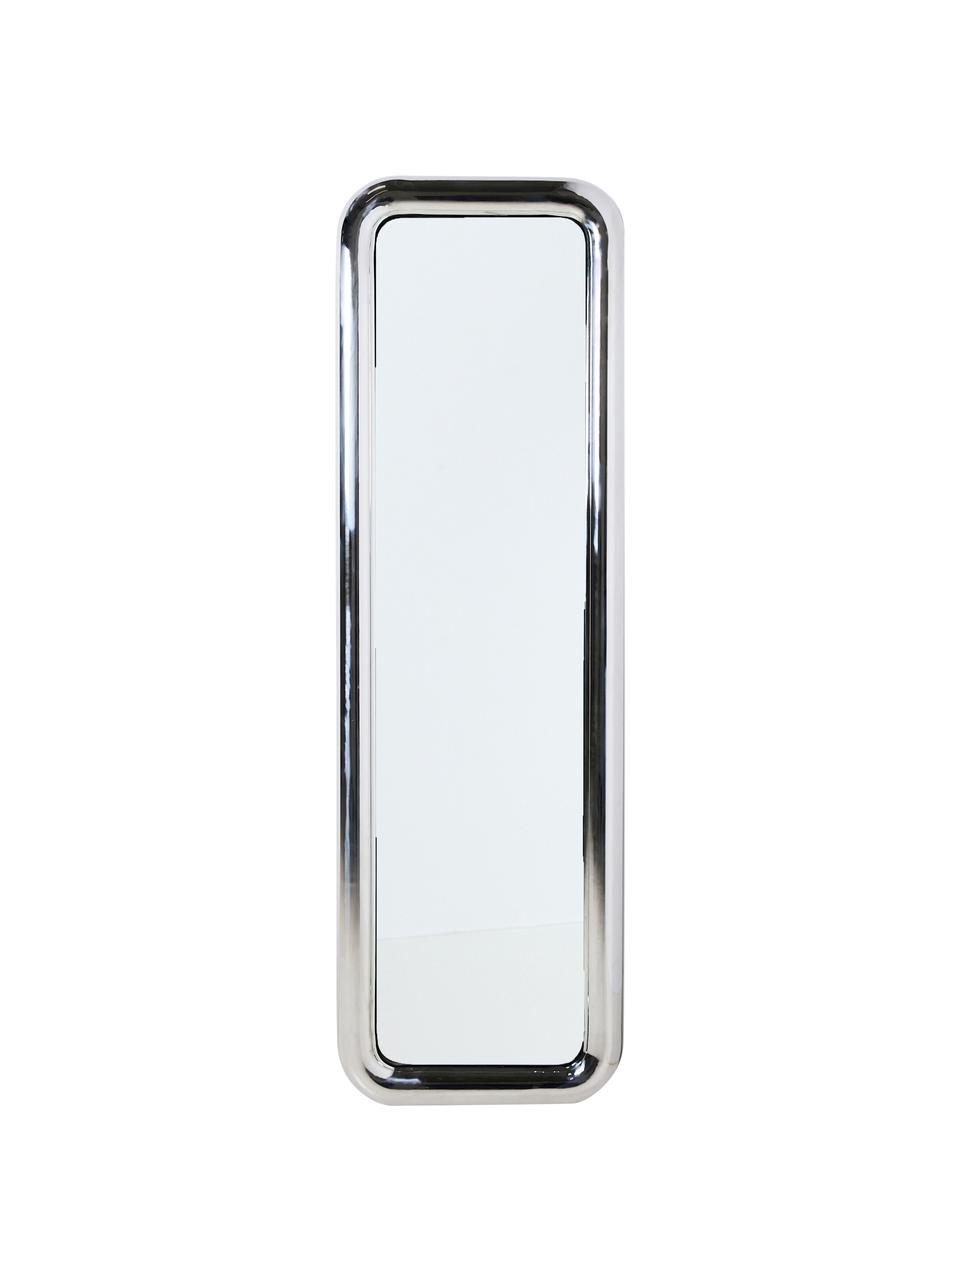 Standspiegel Chubby mit Stahlrahmen, Spiegelfläche: Spiegelglas, Rahmen: Stahl, verchromt, Chromfarben, B 53 x H 170 cm